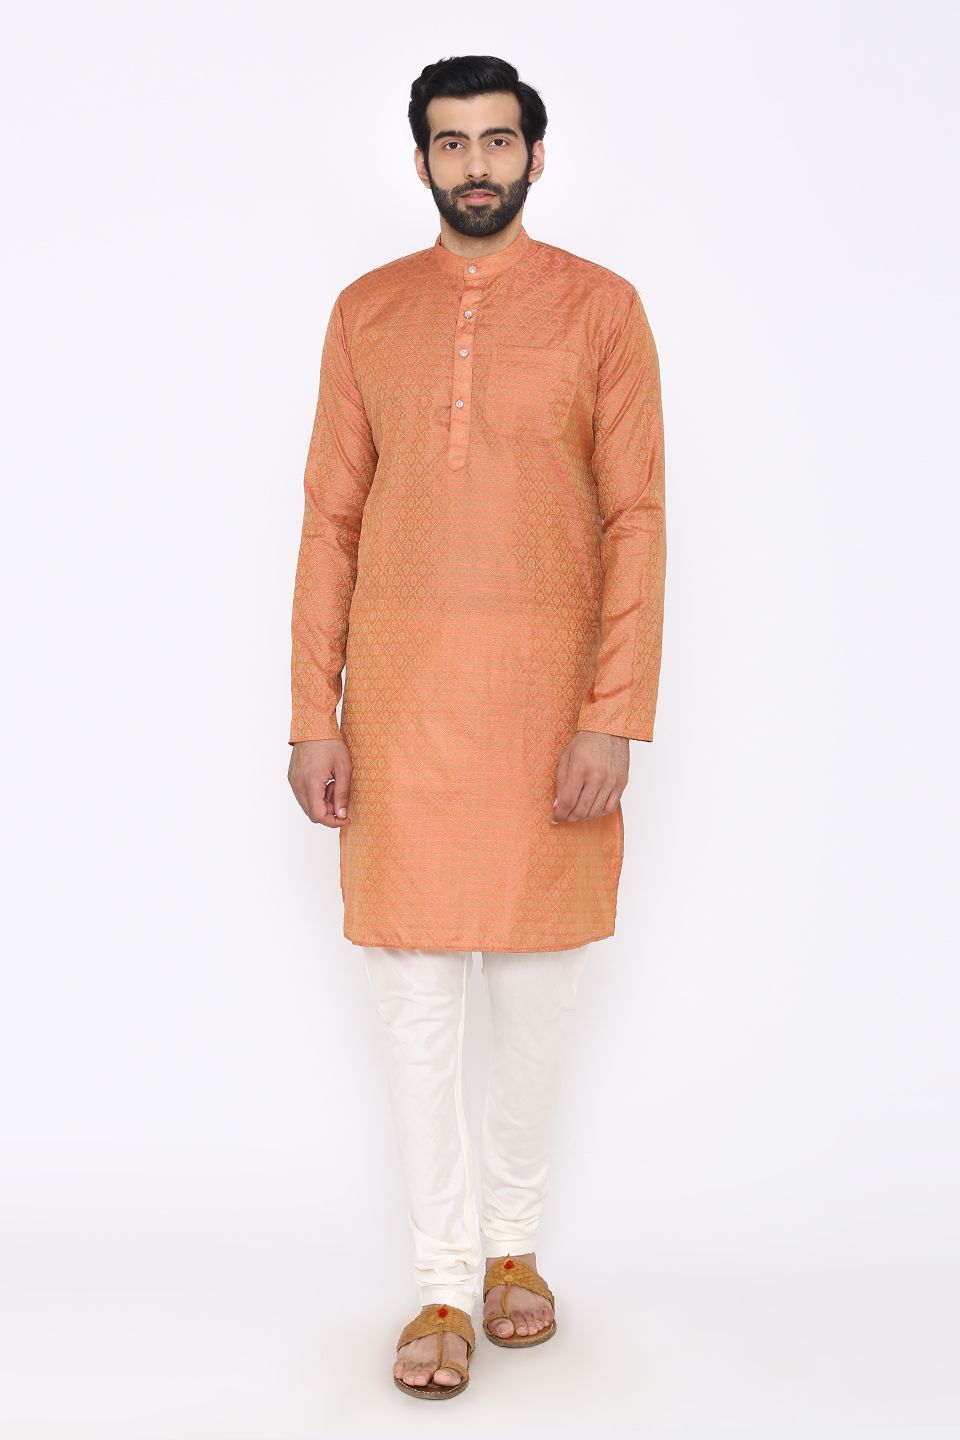 Banarasi Art Silk Cotton Blend Orange Long Kurta